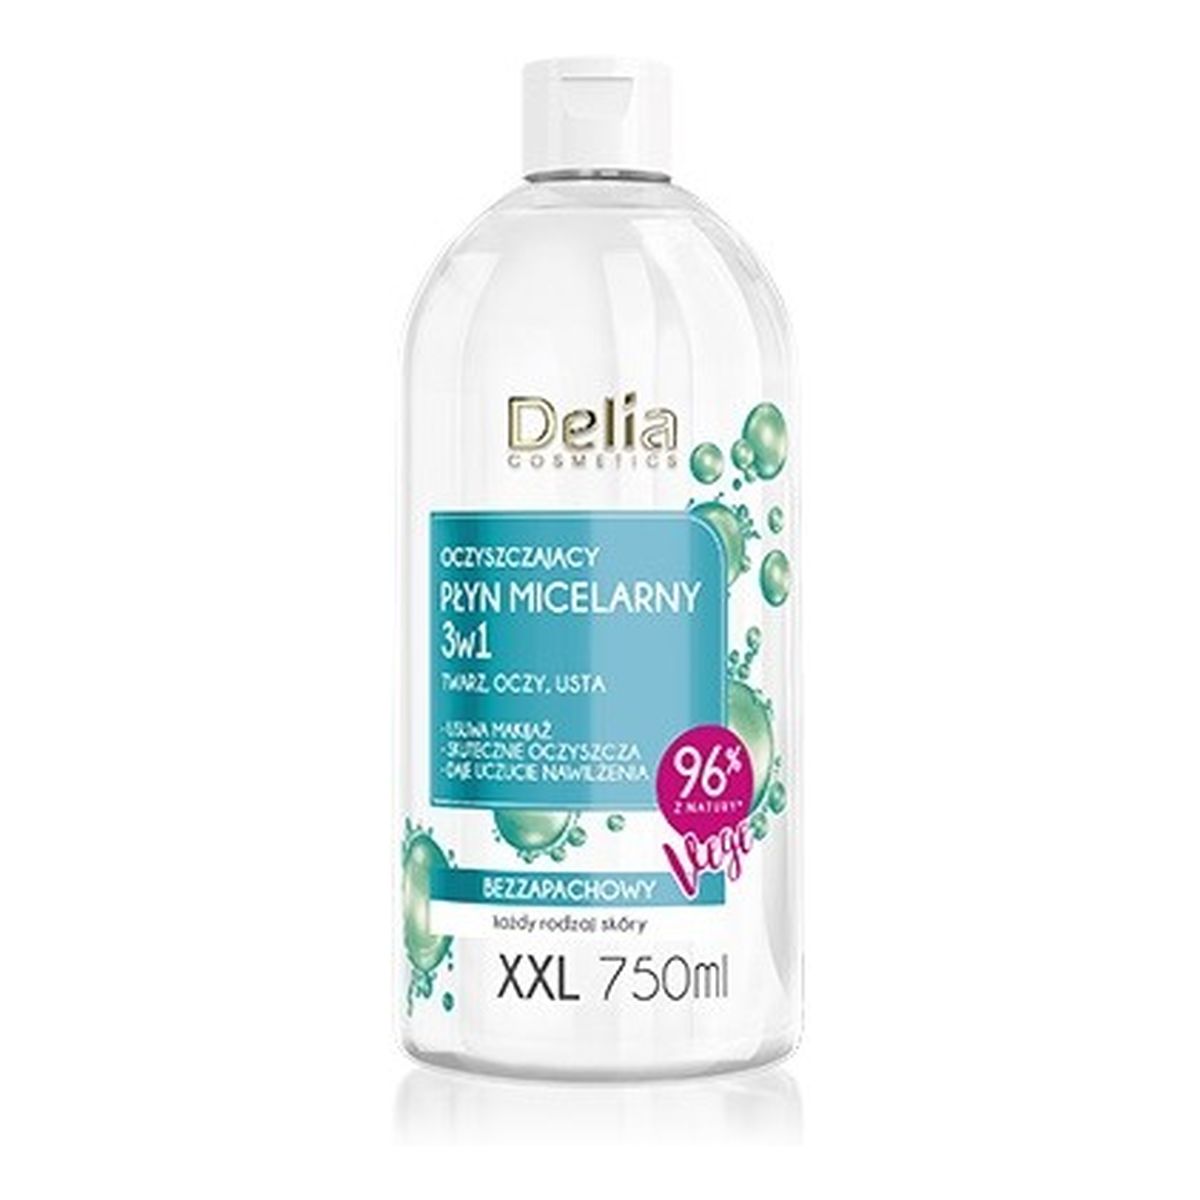 Delia Cosmetics oczyszczający płyn micelarny 3w1 xxl 750ml